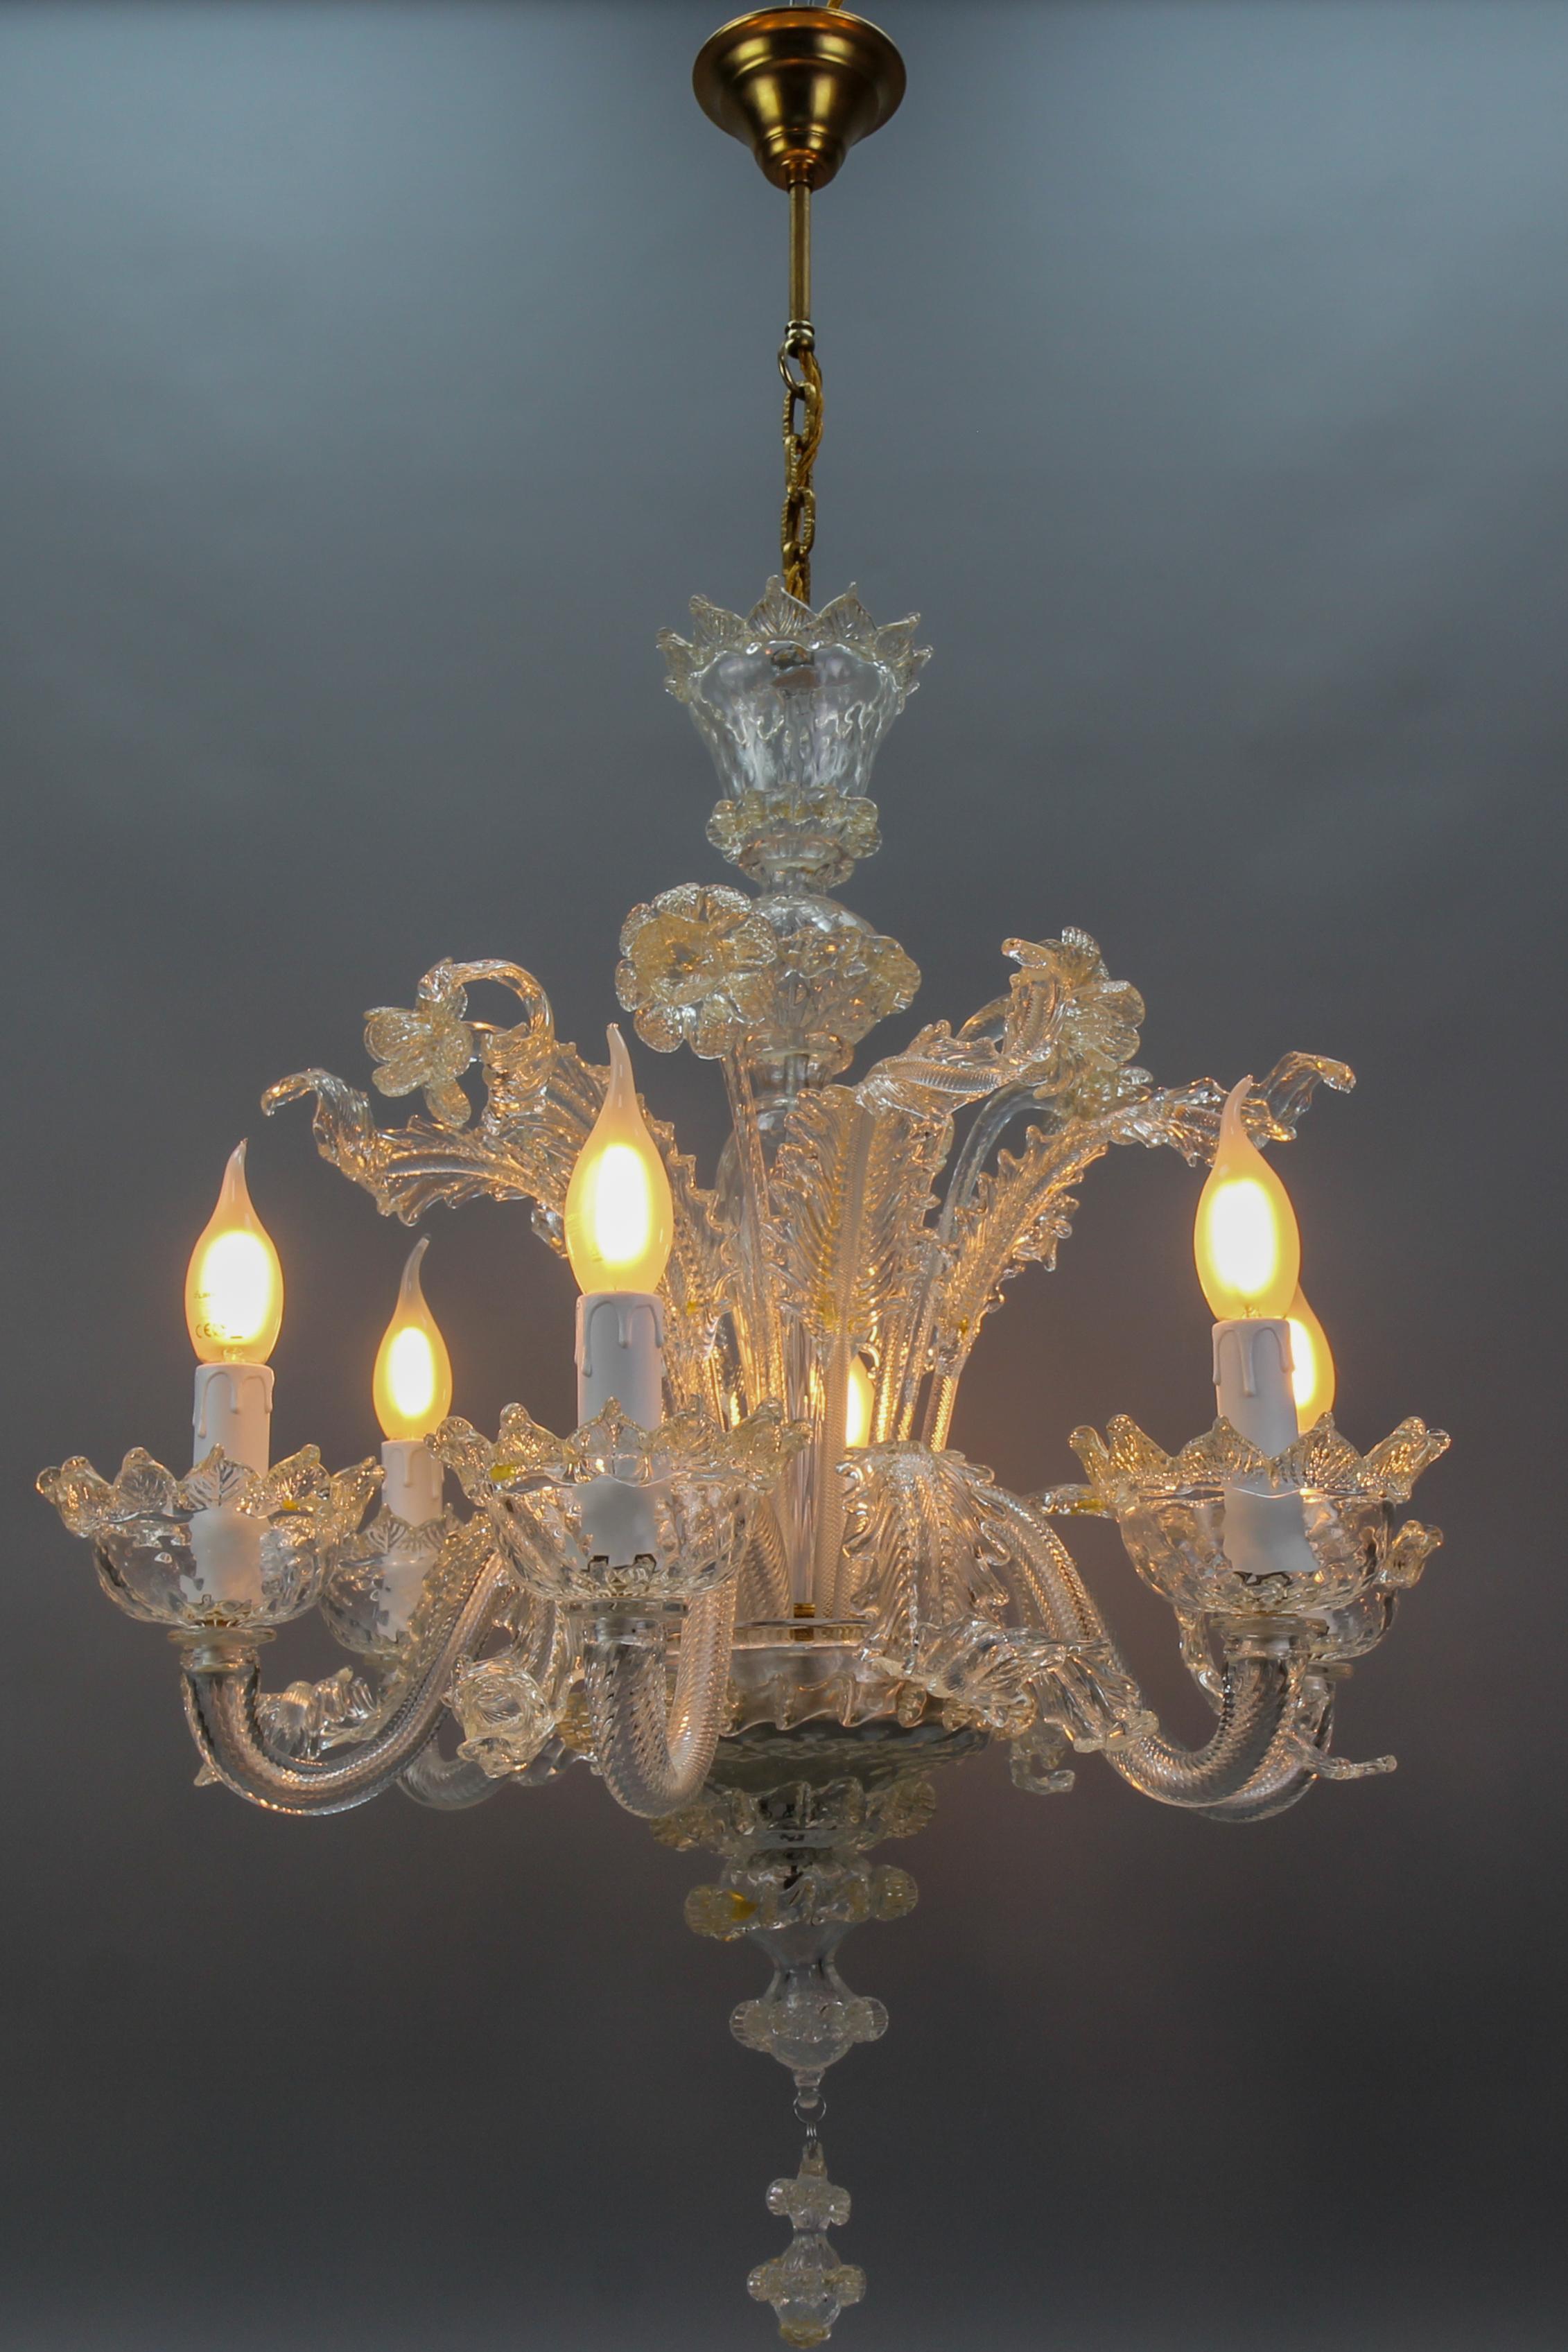 Italienischer venezianischer Murano-Kronleuchter aus klarem Glas und Goldstaub mit sechs Lichtern aus den 1950er Jahren.
Dieser majestätische Kronleuchter aus Murano-Glas mit goldenen Einschlüssen im Inneren des klaren Glases verfügt über sechs